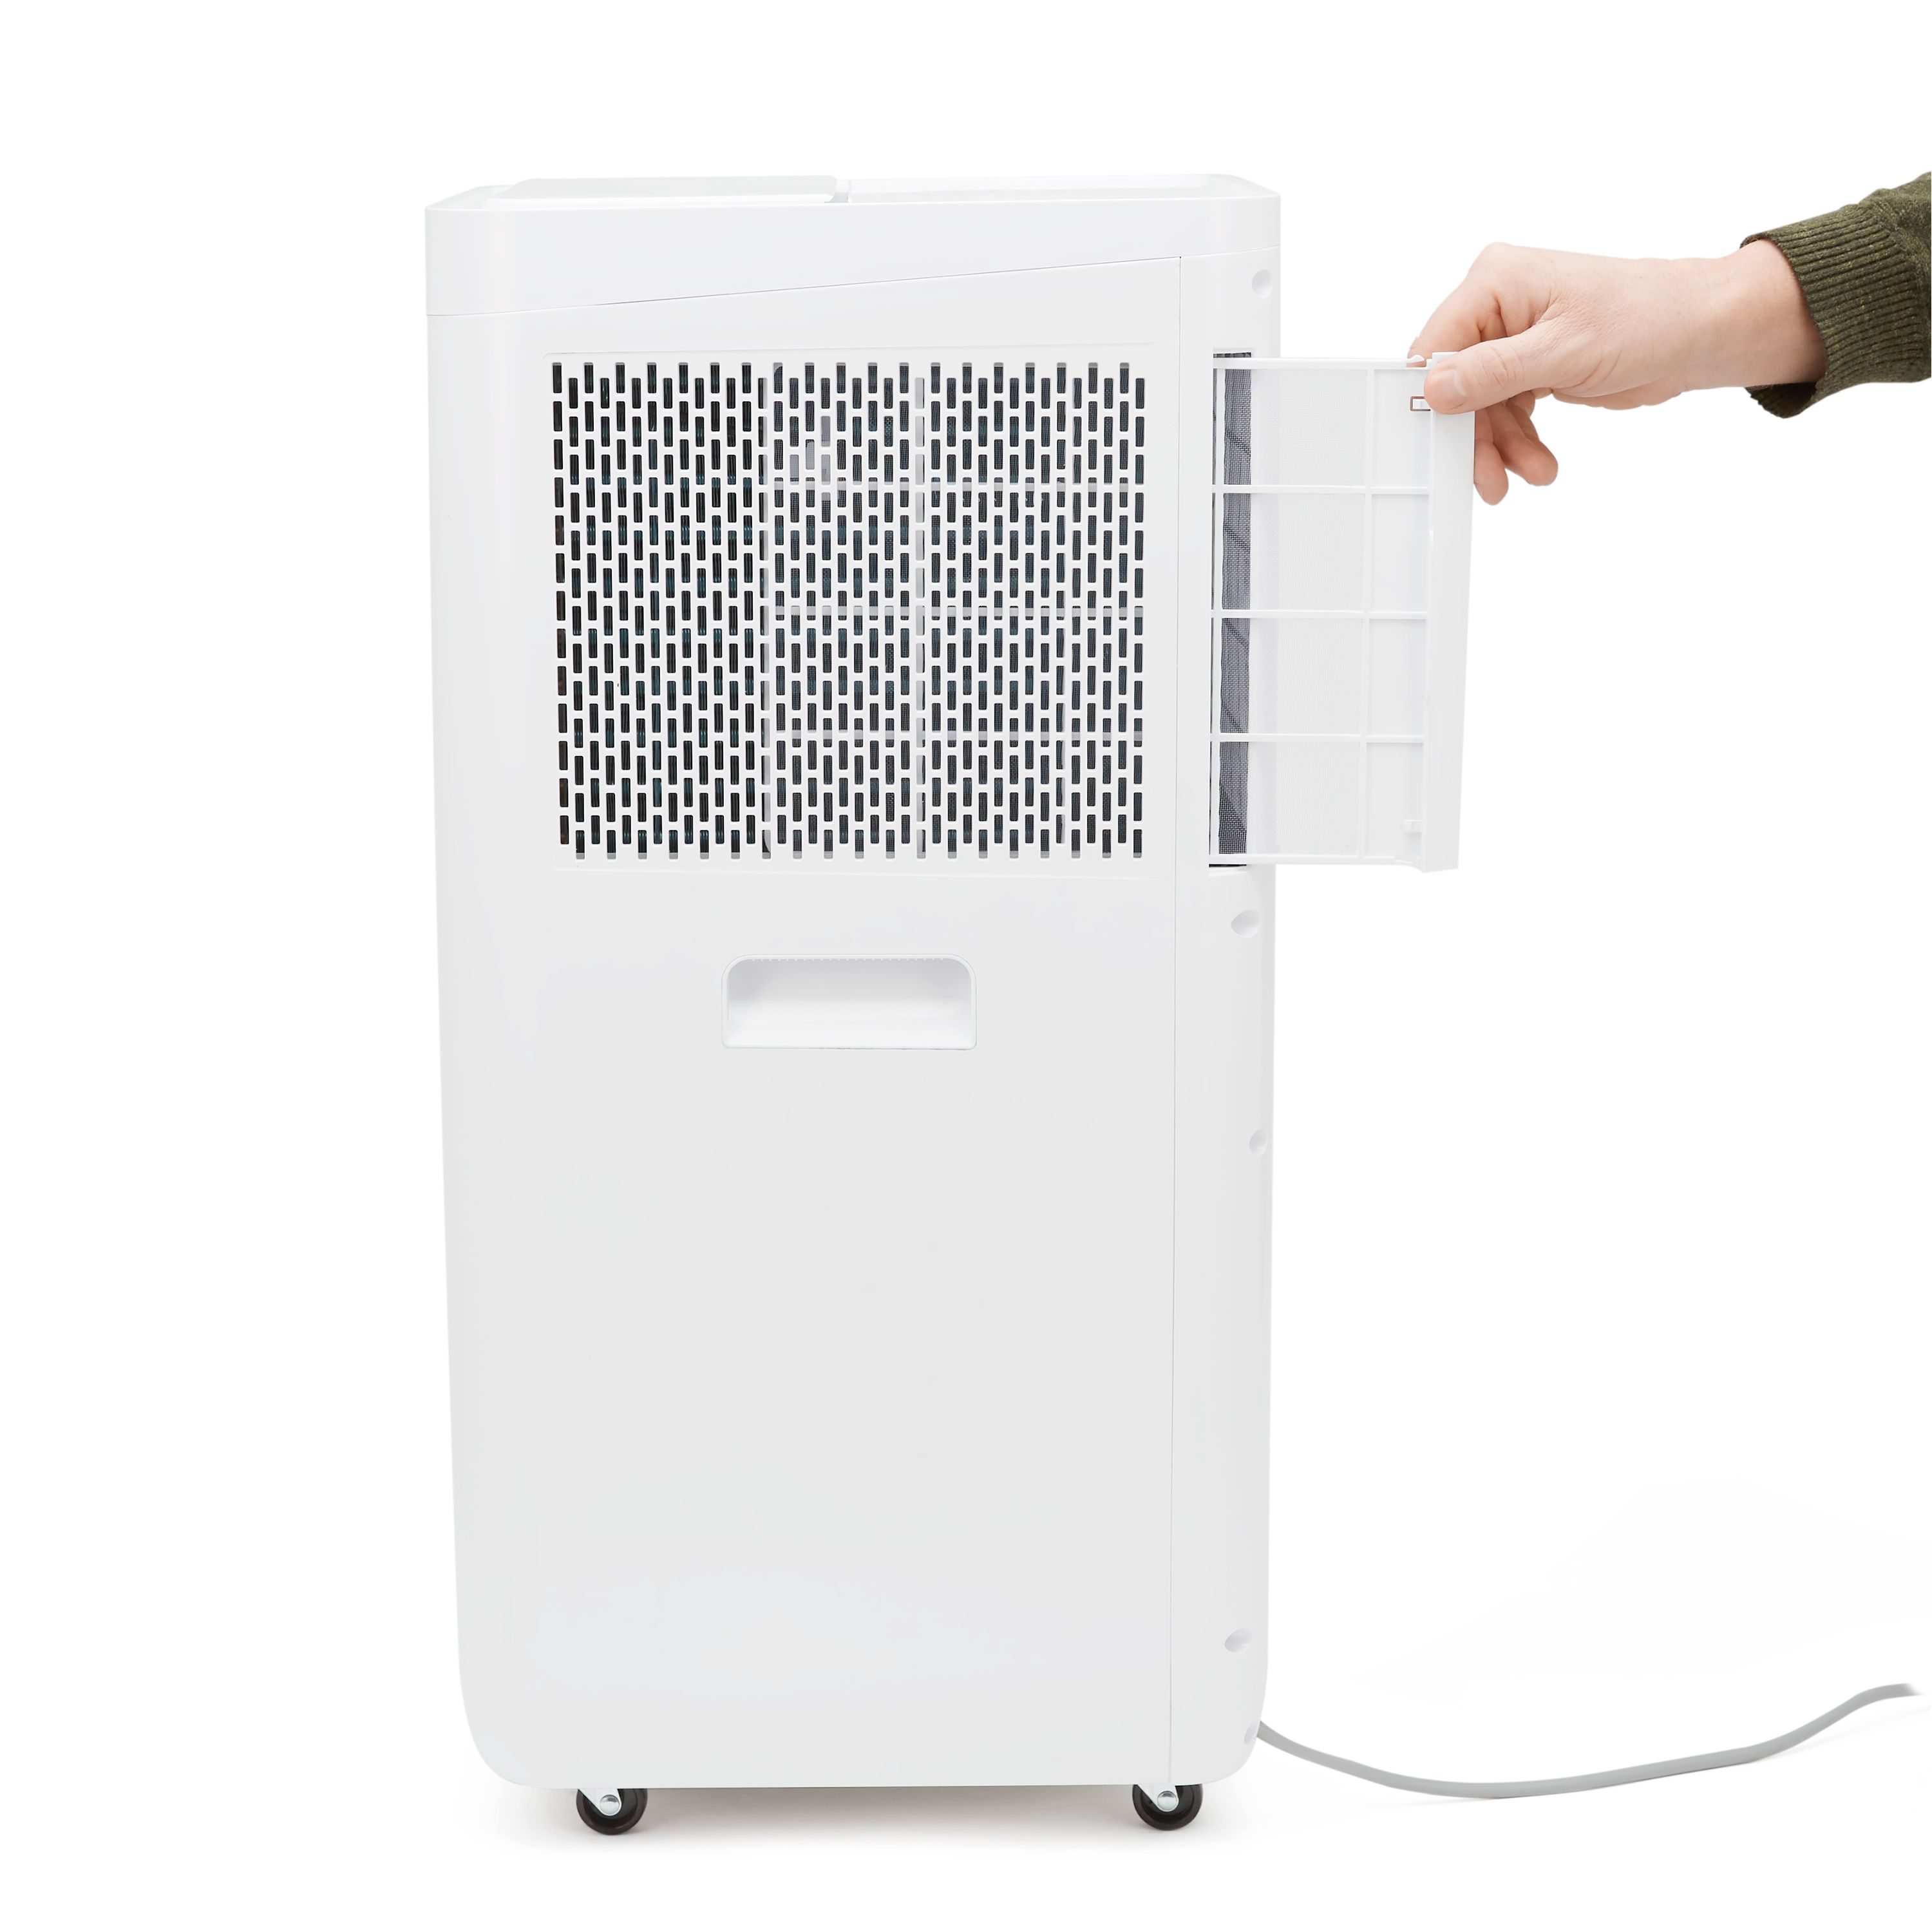 Wood's Como 12000BTU Smart Air conditioner